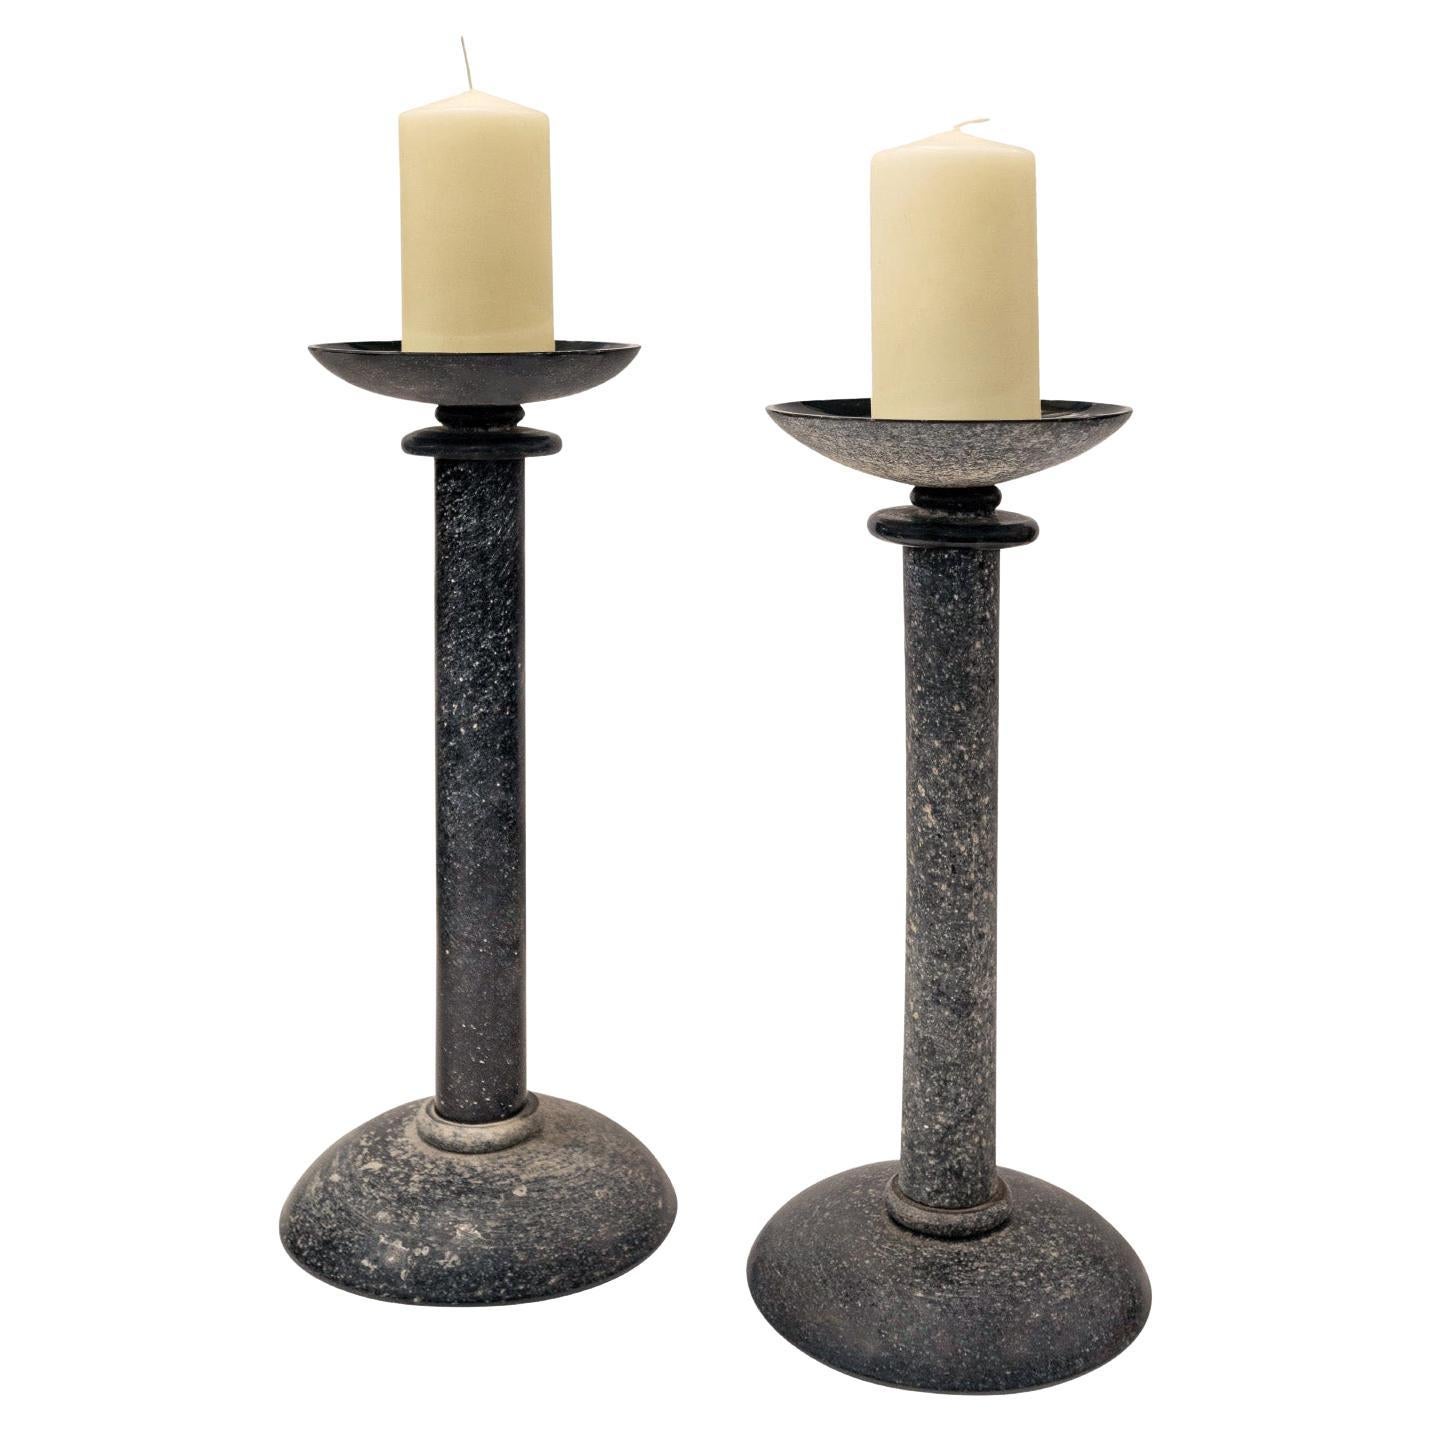 Karl Springer, Paar mundgeblasene schwarze Glas-Kerzenhalter, 1980er Jahre (Signiert)